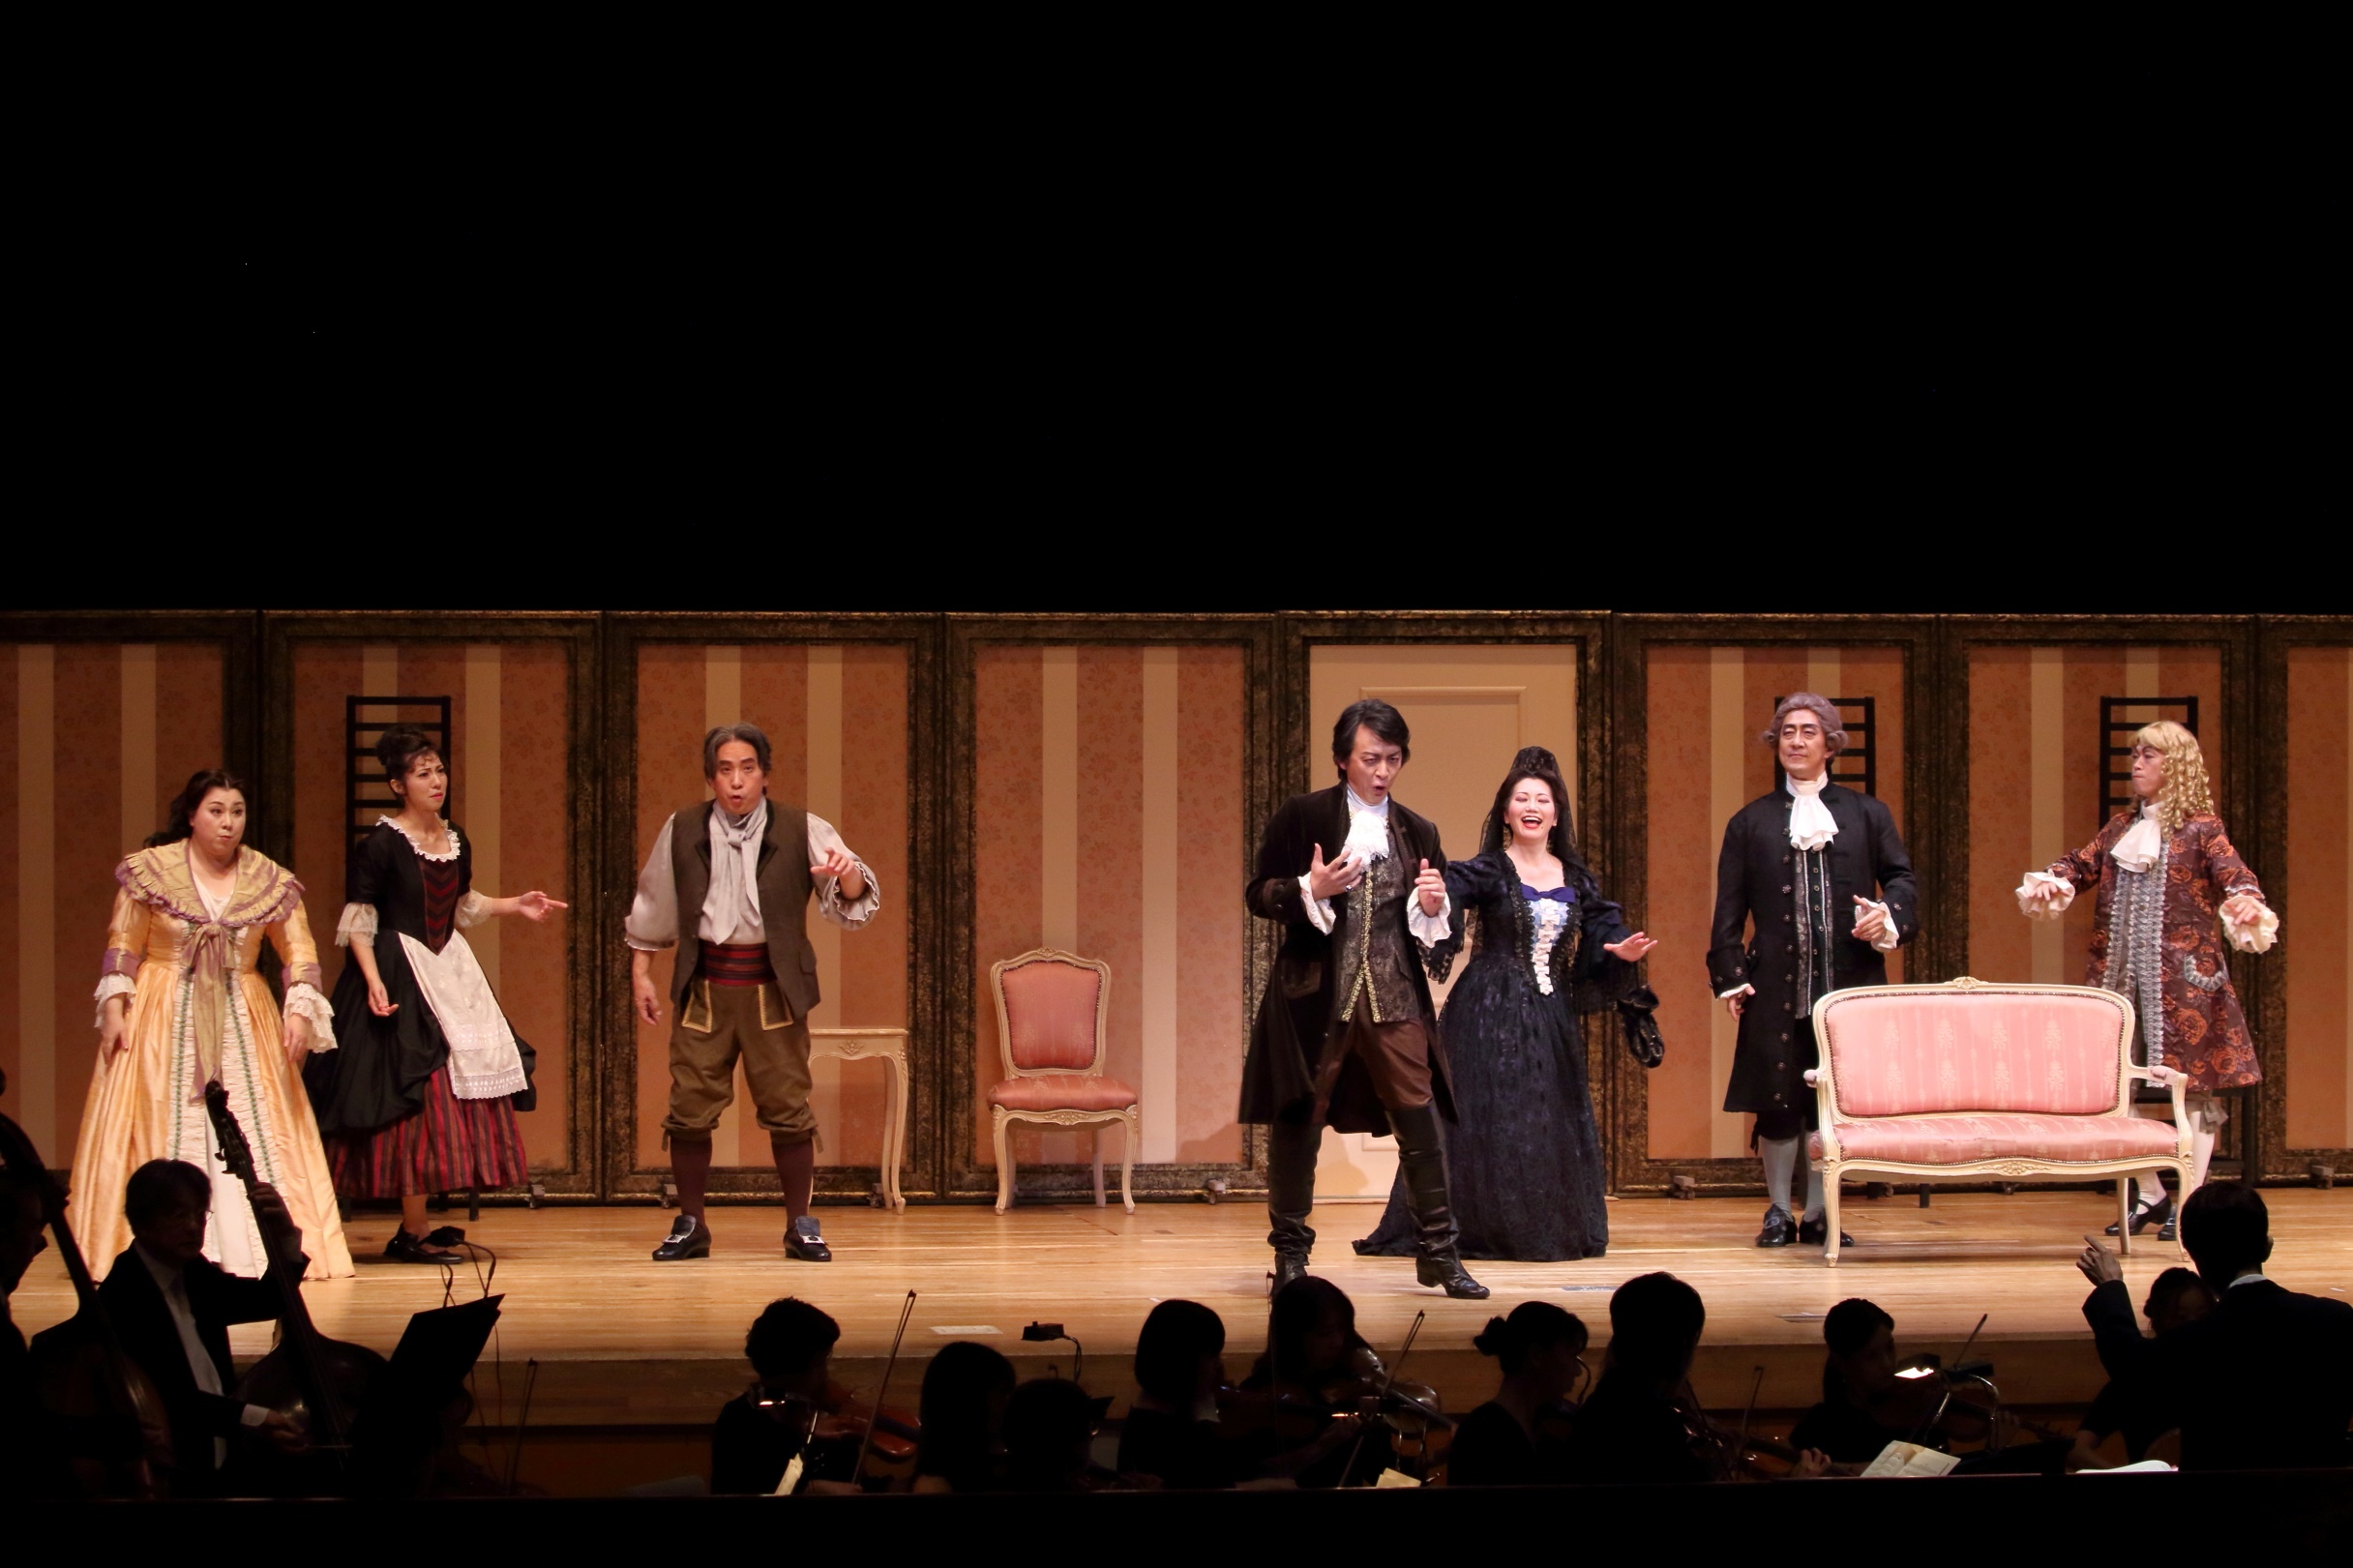 第18回聖徳オペラ公演「フィガロの結婚」レポート第1弾